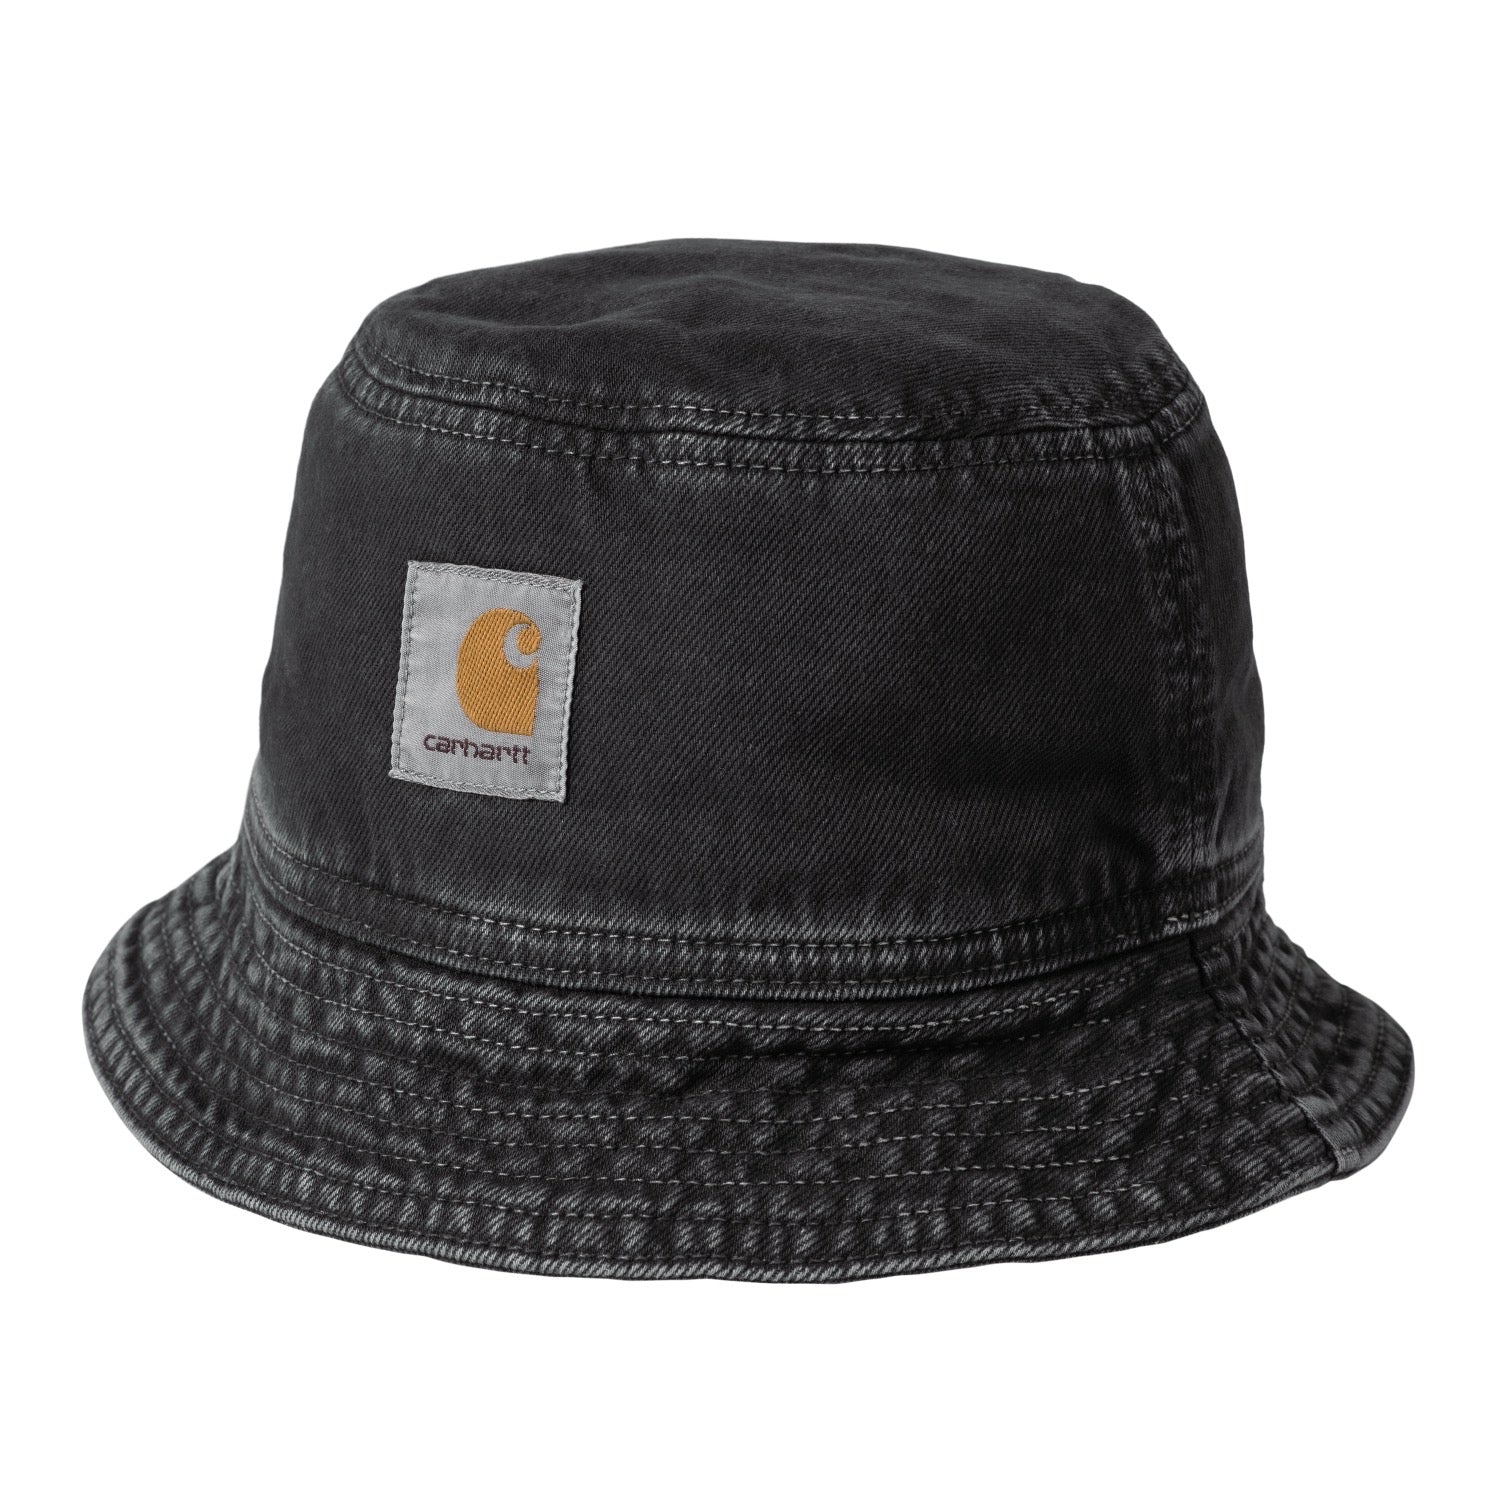 GARRISON BUCKET HAT - Black (stone dyed)